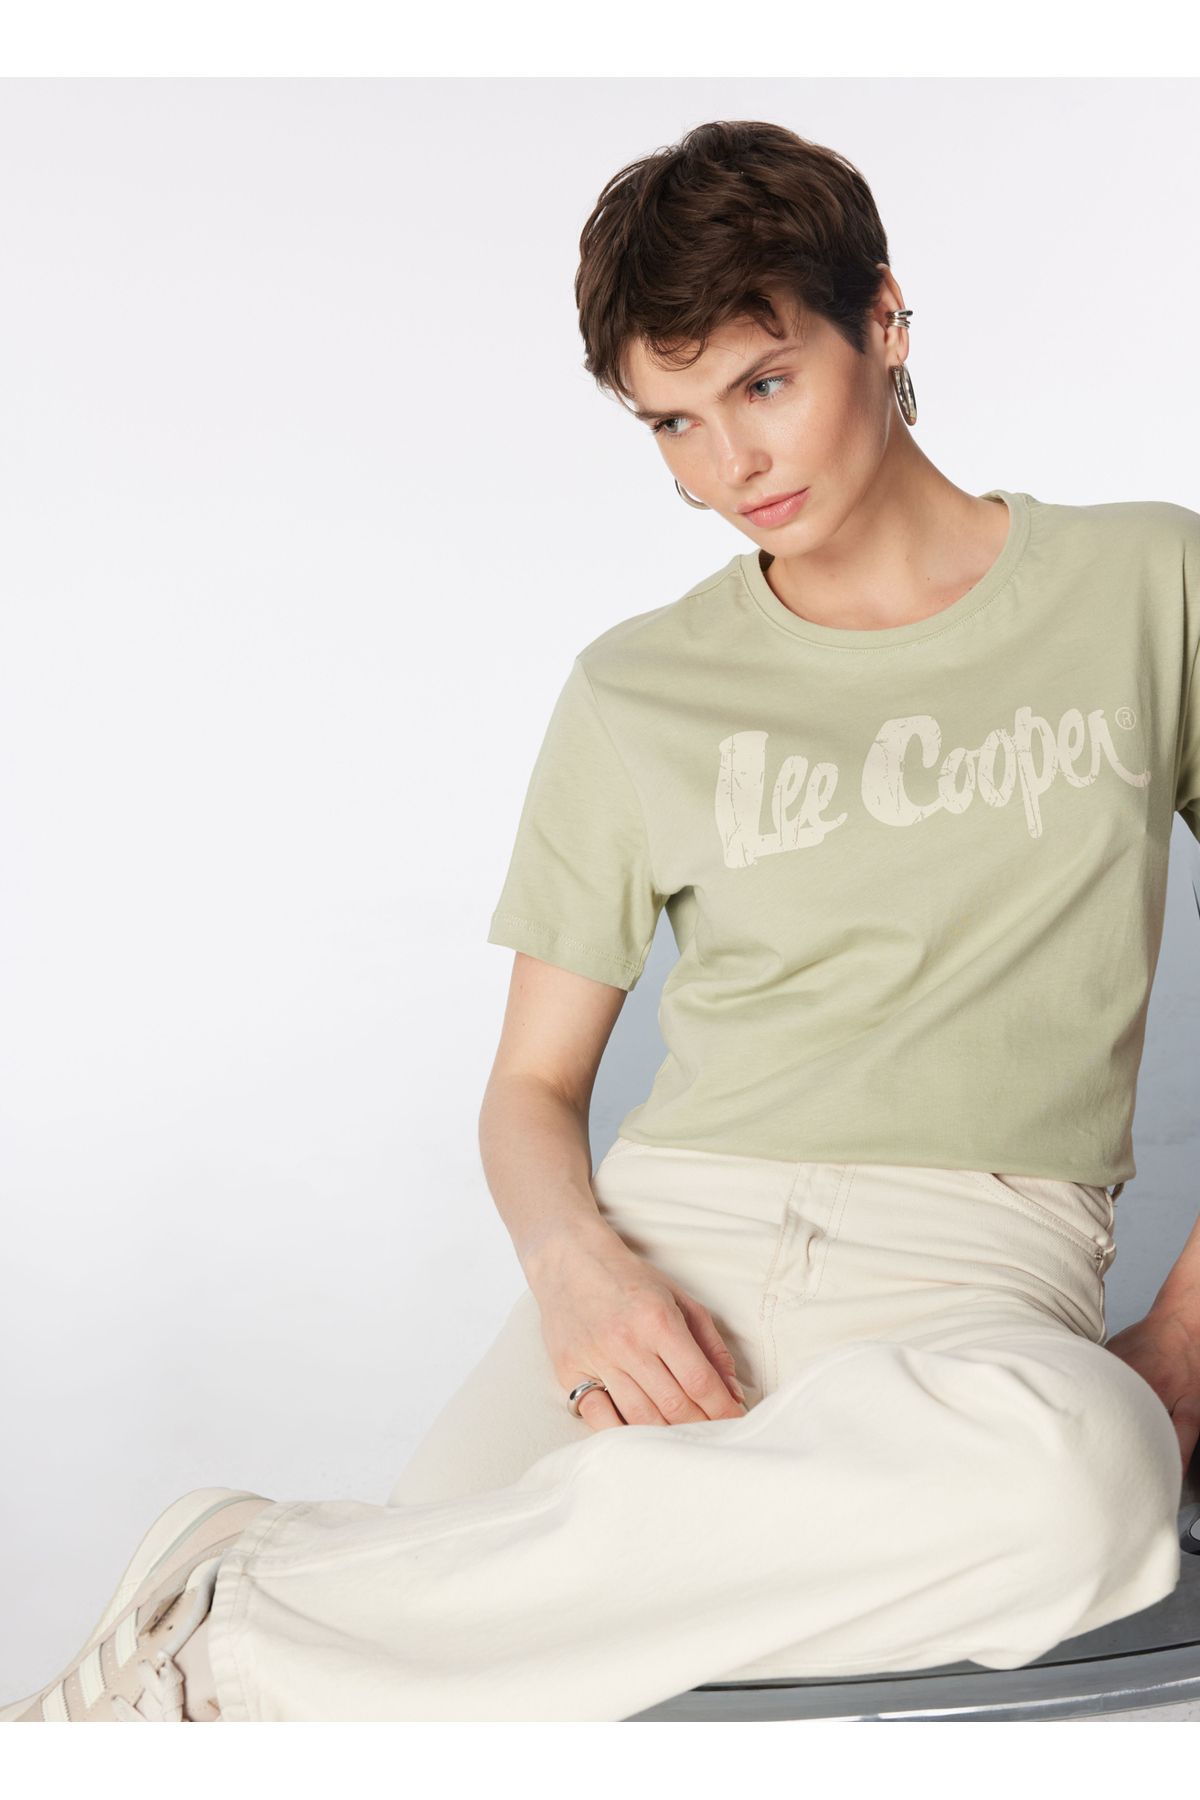 Lee Cooper O Yaka Baskılı Açık Haki Kadın T-Shirt 242 LCF 242005 LONDONLOGO A. HAKİ